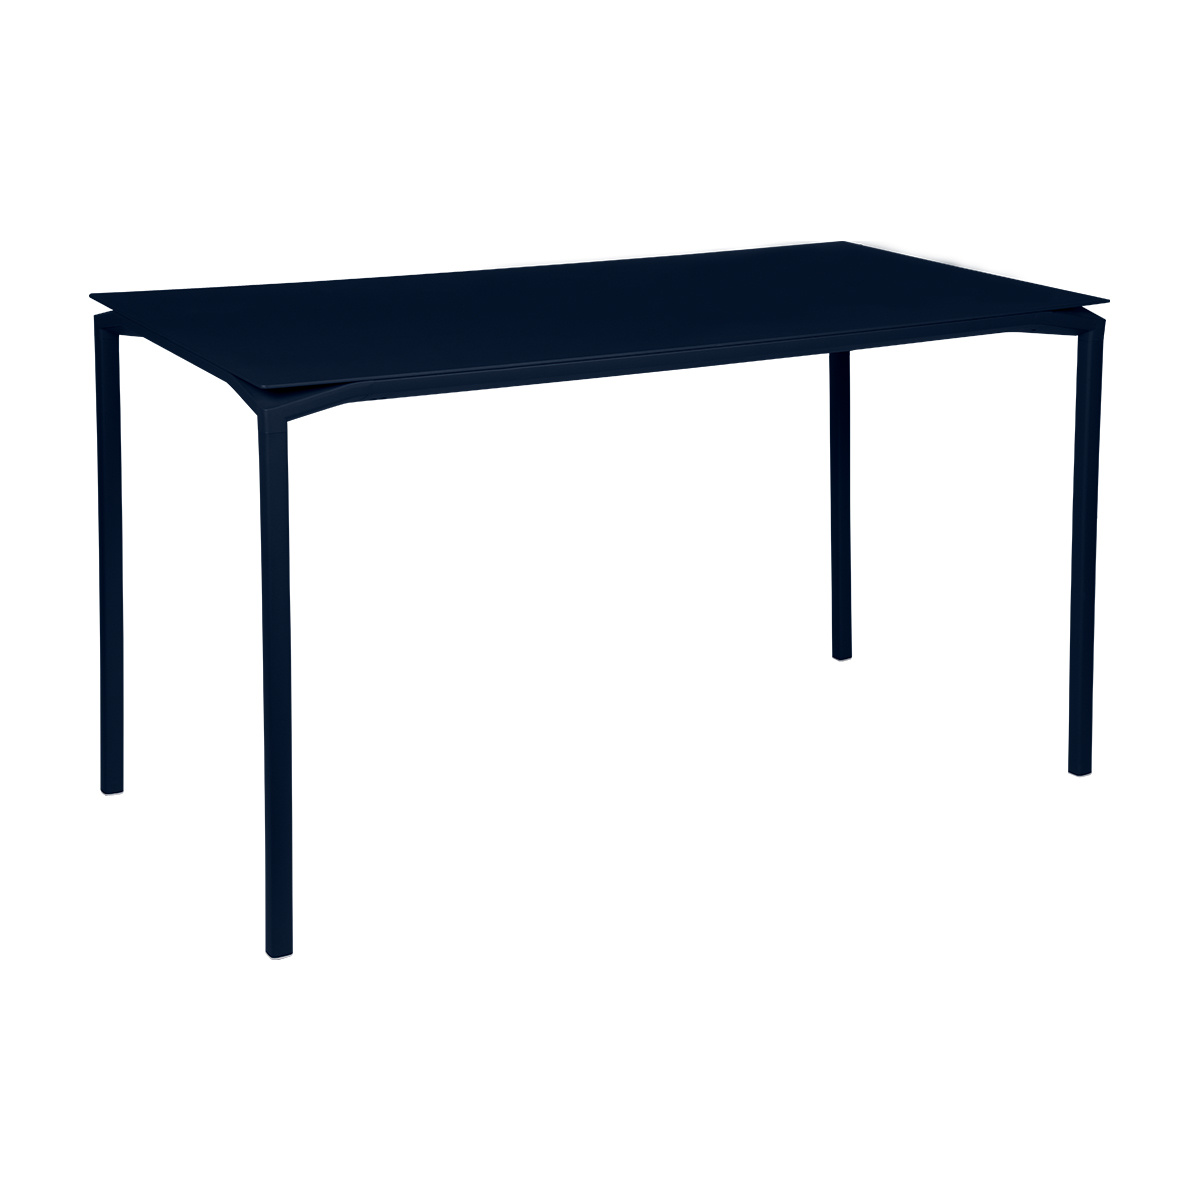 Fermob - Calvi Gartentisch hoch 160x80cm - abyssblau/texturiert/LxBxH 160x80x92cm/UV-beständig von Fermob